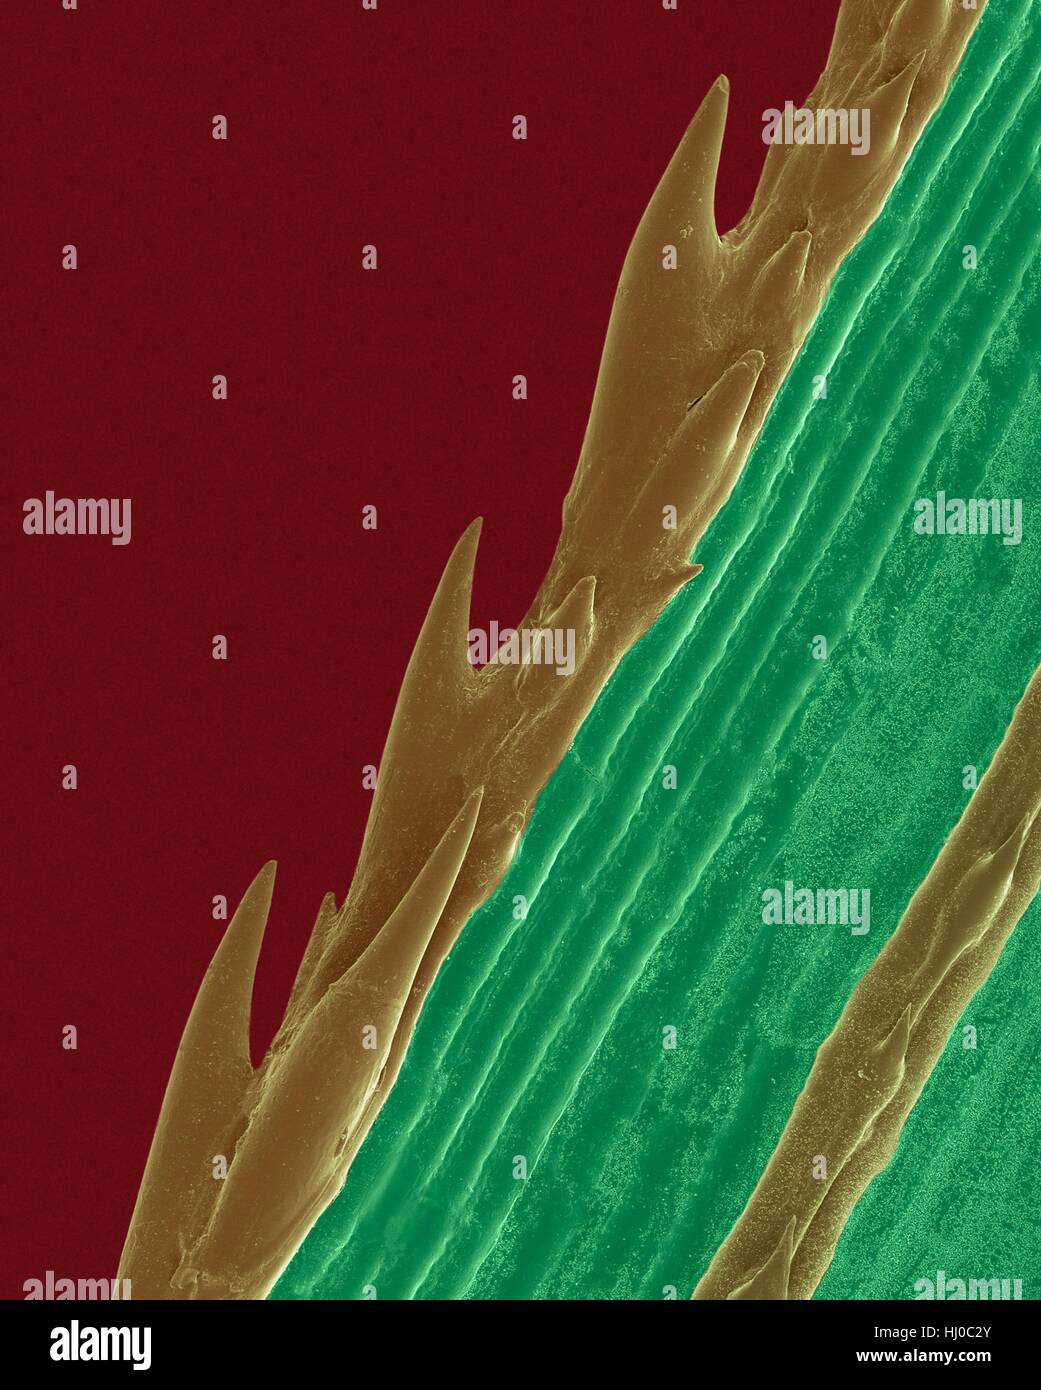 Una lama di erba con bordo seghettato (scrobiculatum sp),color scanning electron microfotografia (SEM).Le piante si evolvono specializzata fisiche caratteristiche chimiche in difesa naturale nei confronti di sollecitazioni nei loro ambienti.La sega acuta-bordo dentato della lama di erba protegge contro gli erbivori.Paspalum è Foto Stock